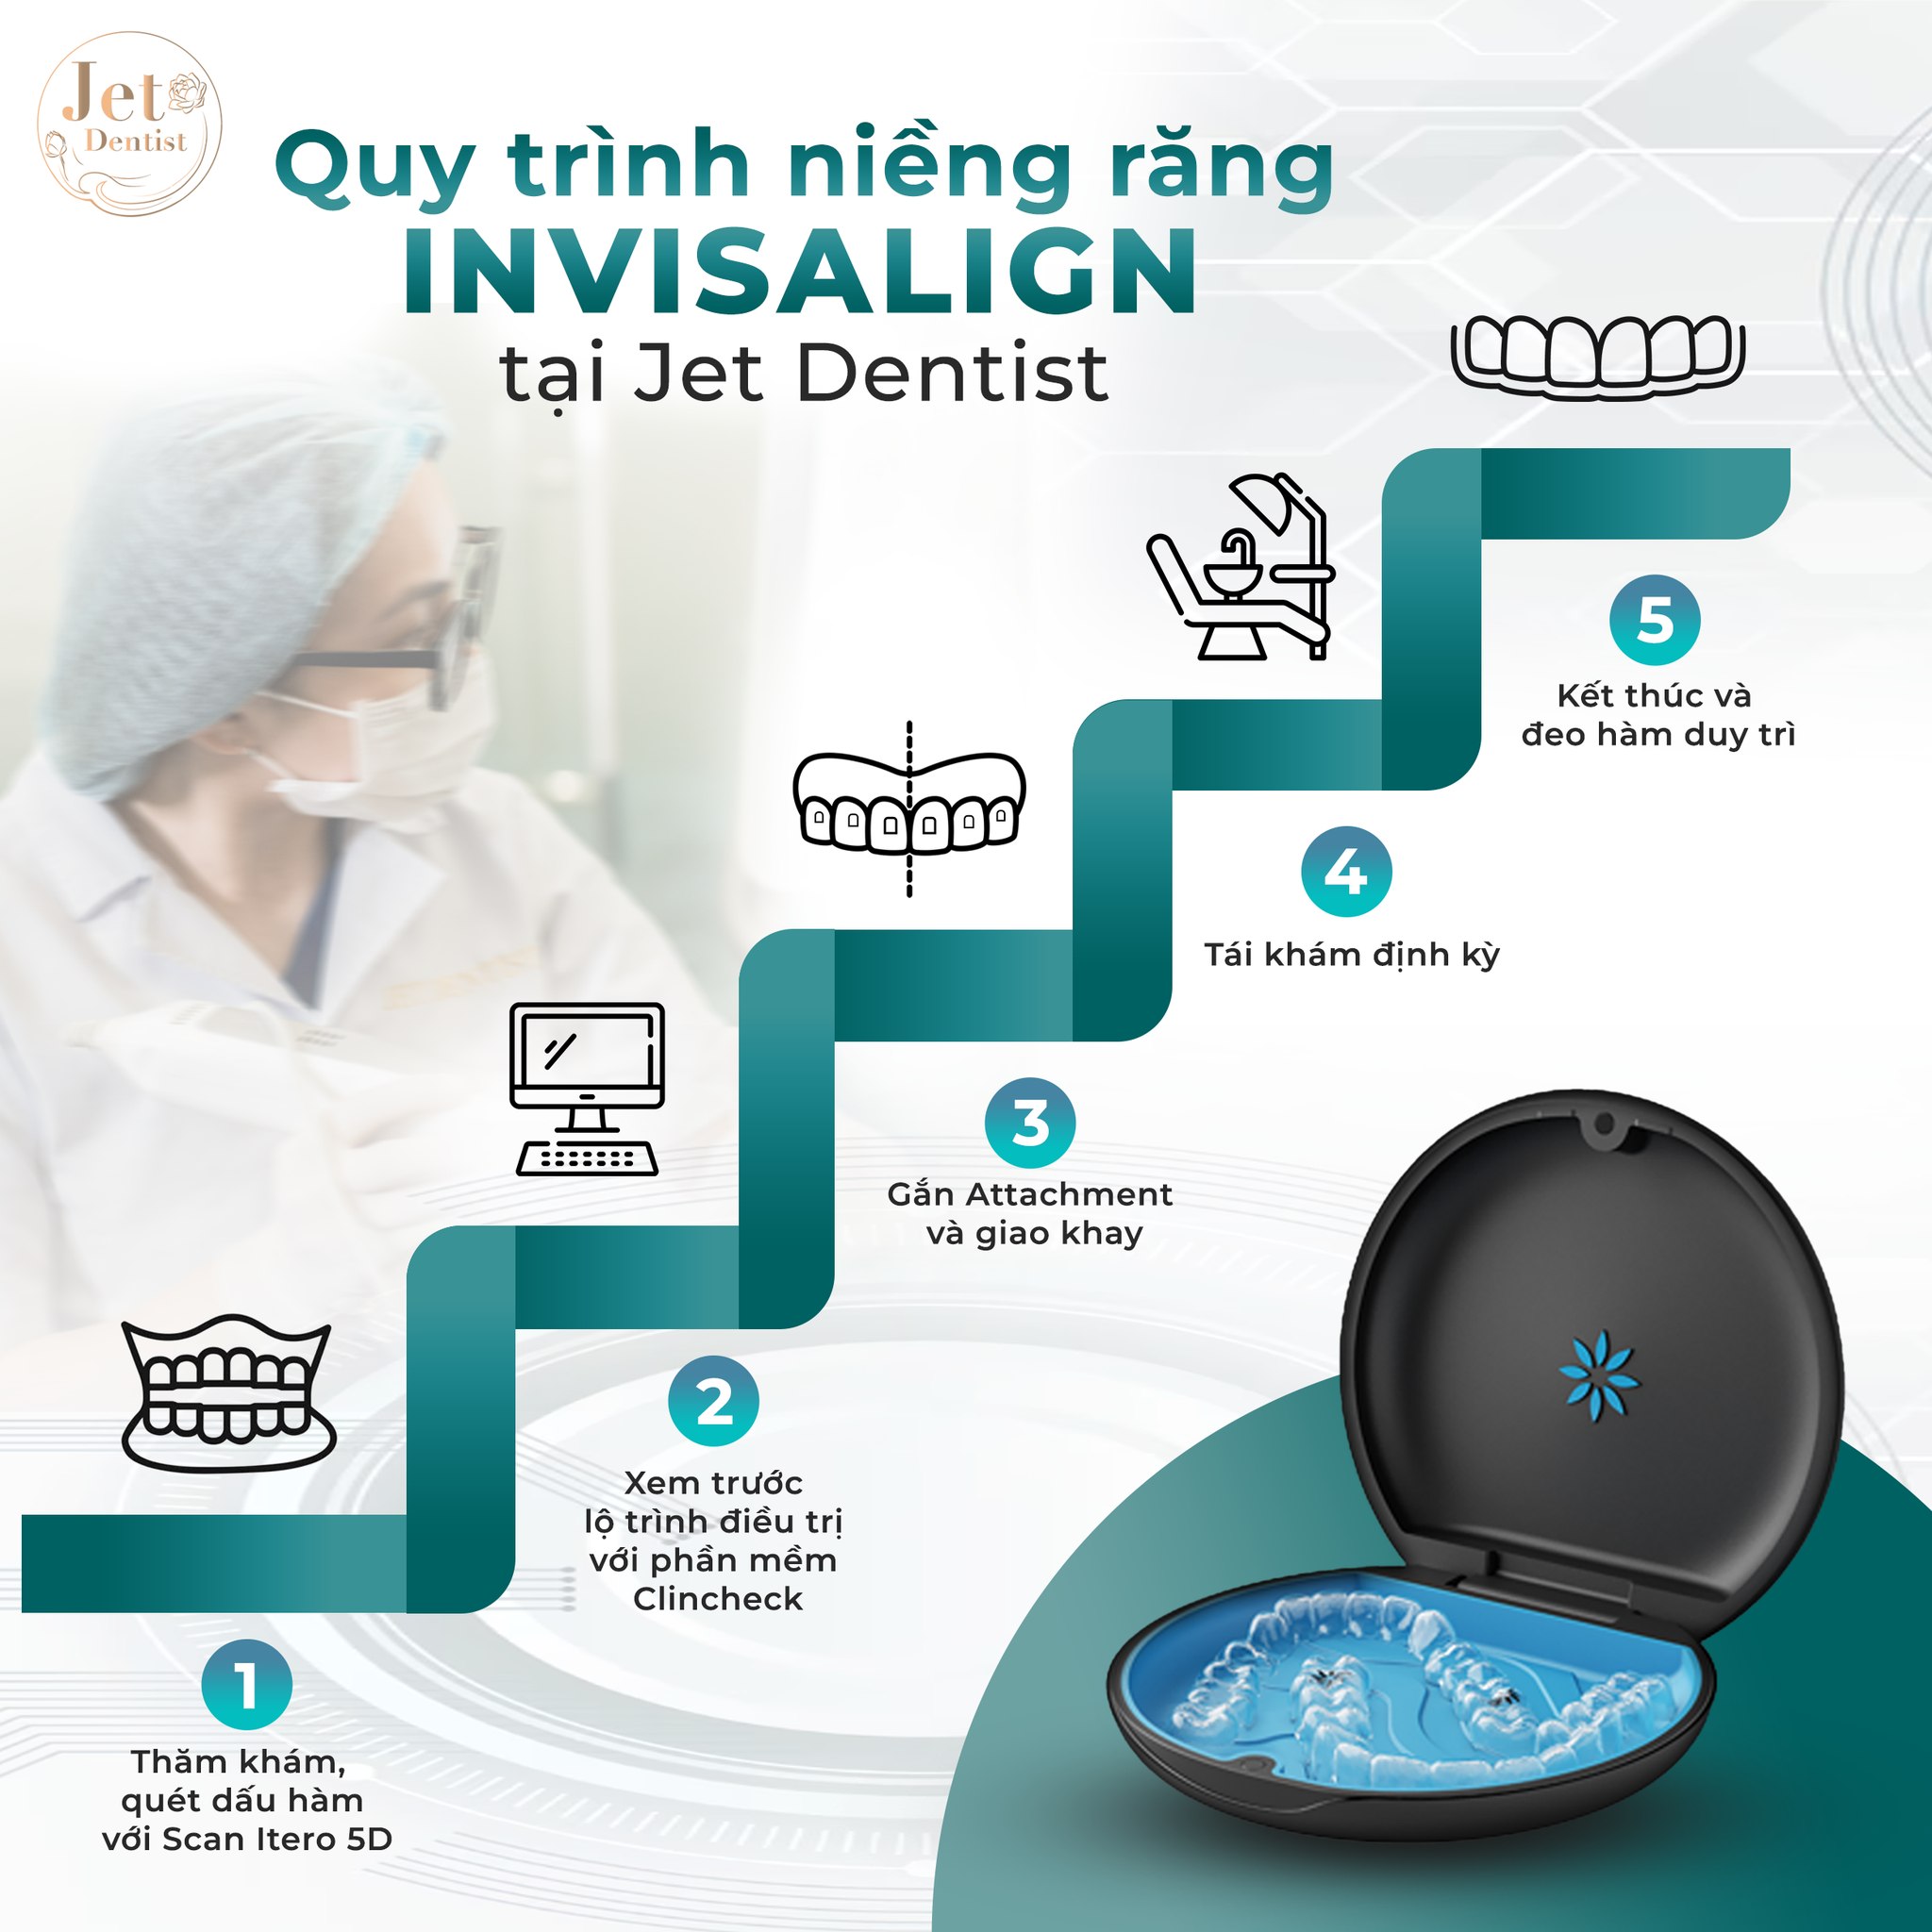 Quy trình chỉnh nha với khay niềng trong suốt Invisalign First tại Jet Dentist